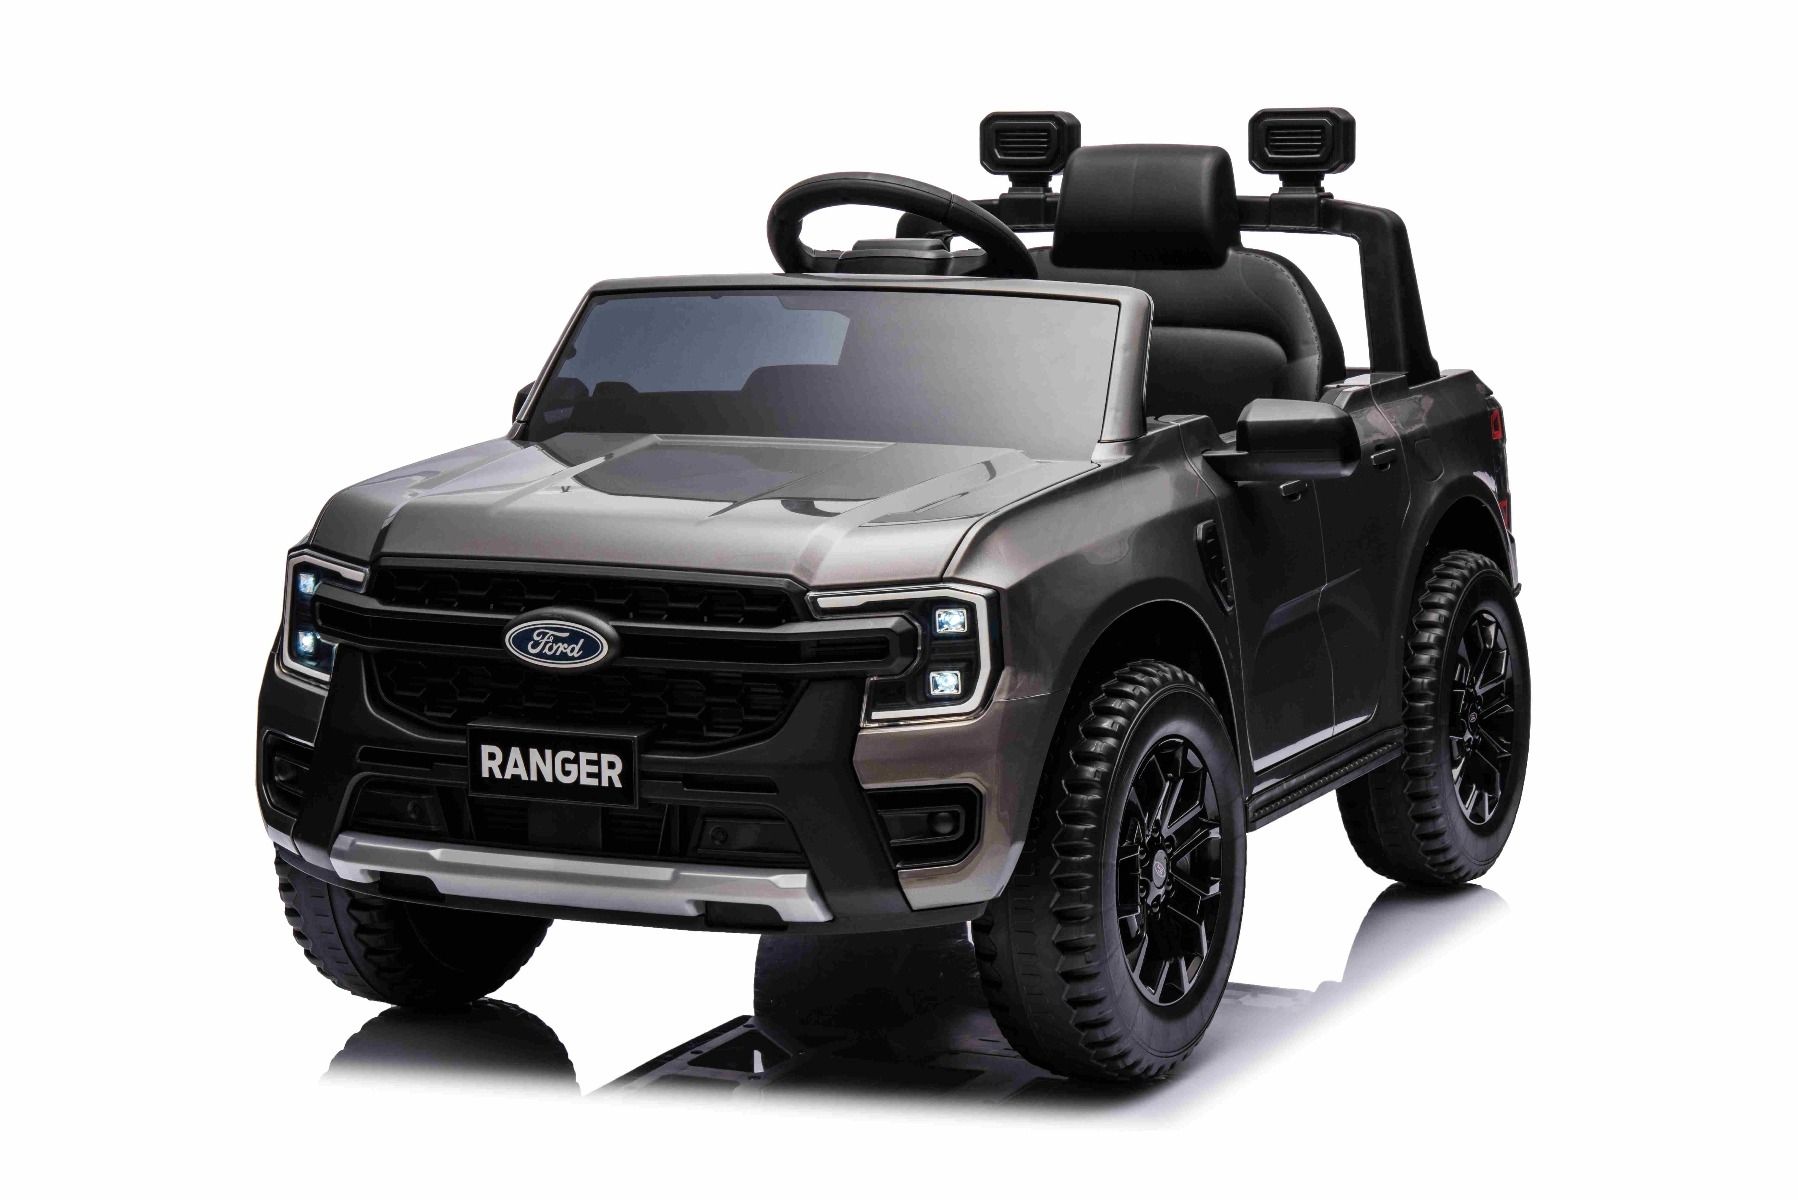 Elektrické autíčko FORD Ranger 12V, Sivá metalíza, Koženkové sedadlo, 2,4 GHz diaľkové ovládanie, Bluetooth / USB Vstup, Odpruženie, 12V batéria, Plastové kolesá, 2 X 30W MOTOR, ORIGINAL licencia